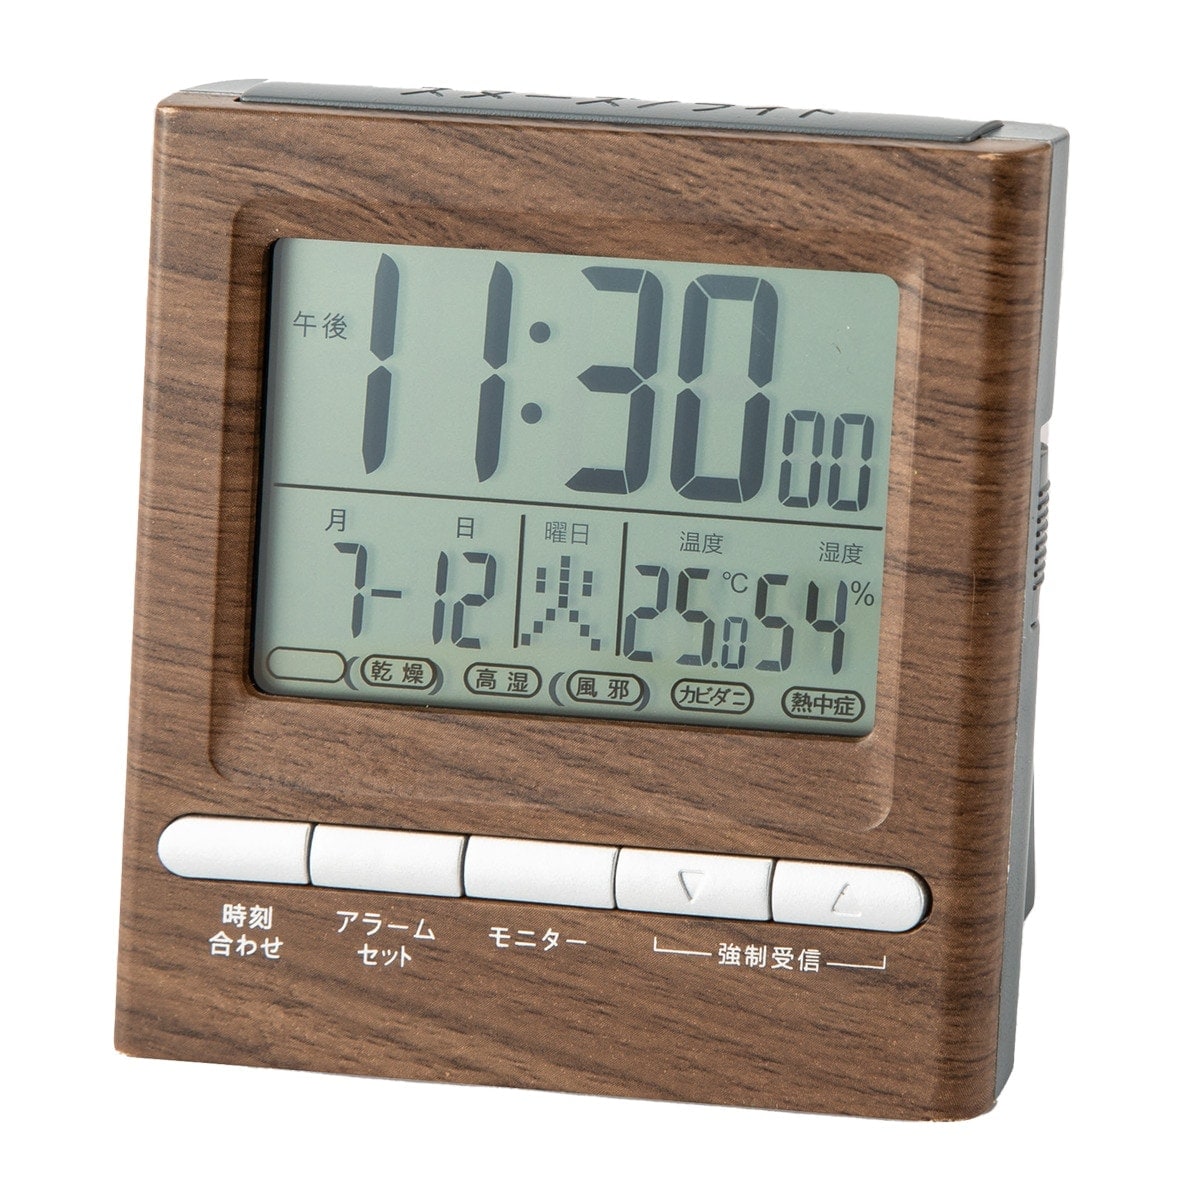 電波デジタル置き時計(ミドルブラウン 001TR) ニトリ 